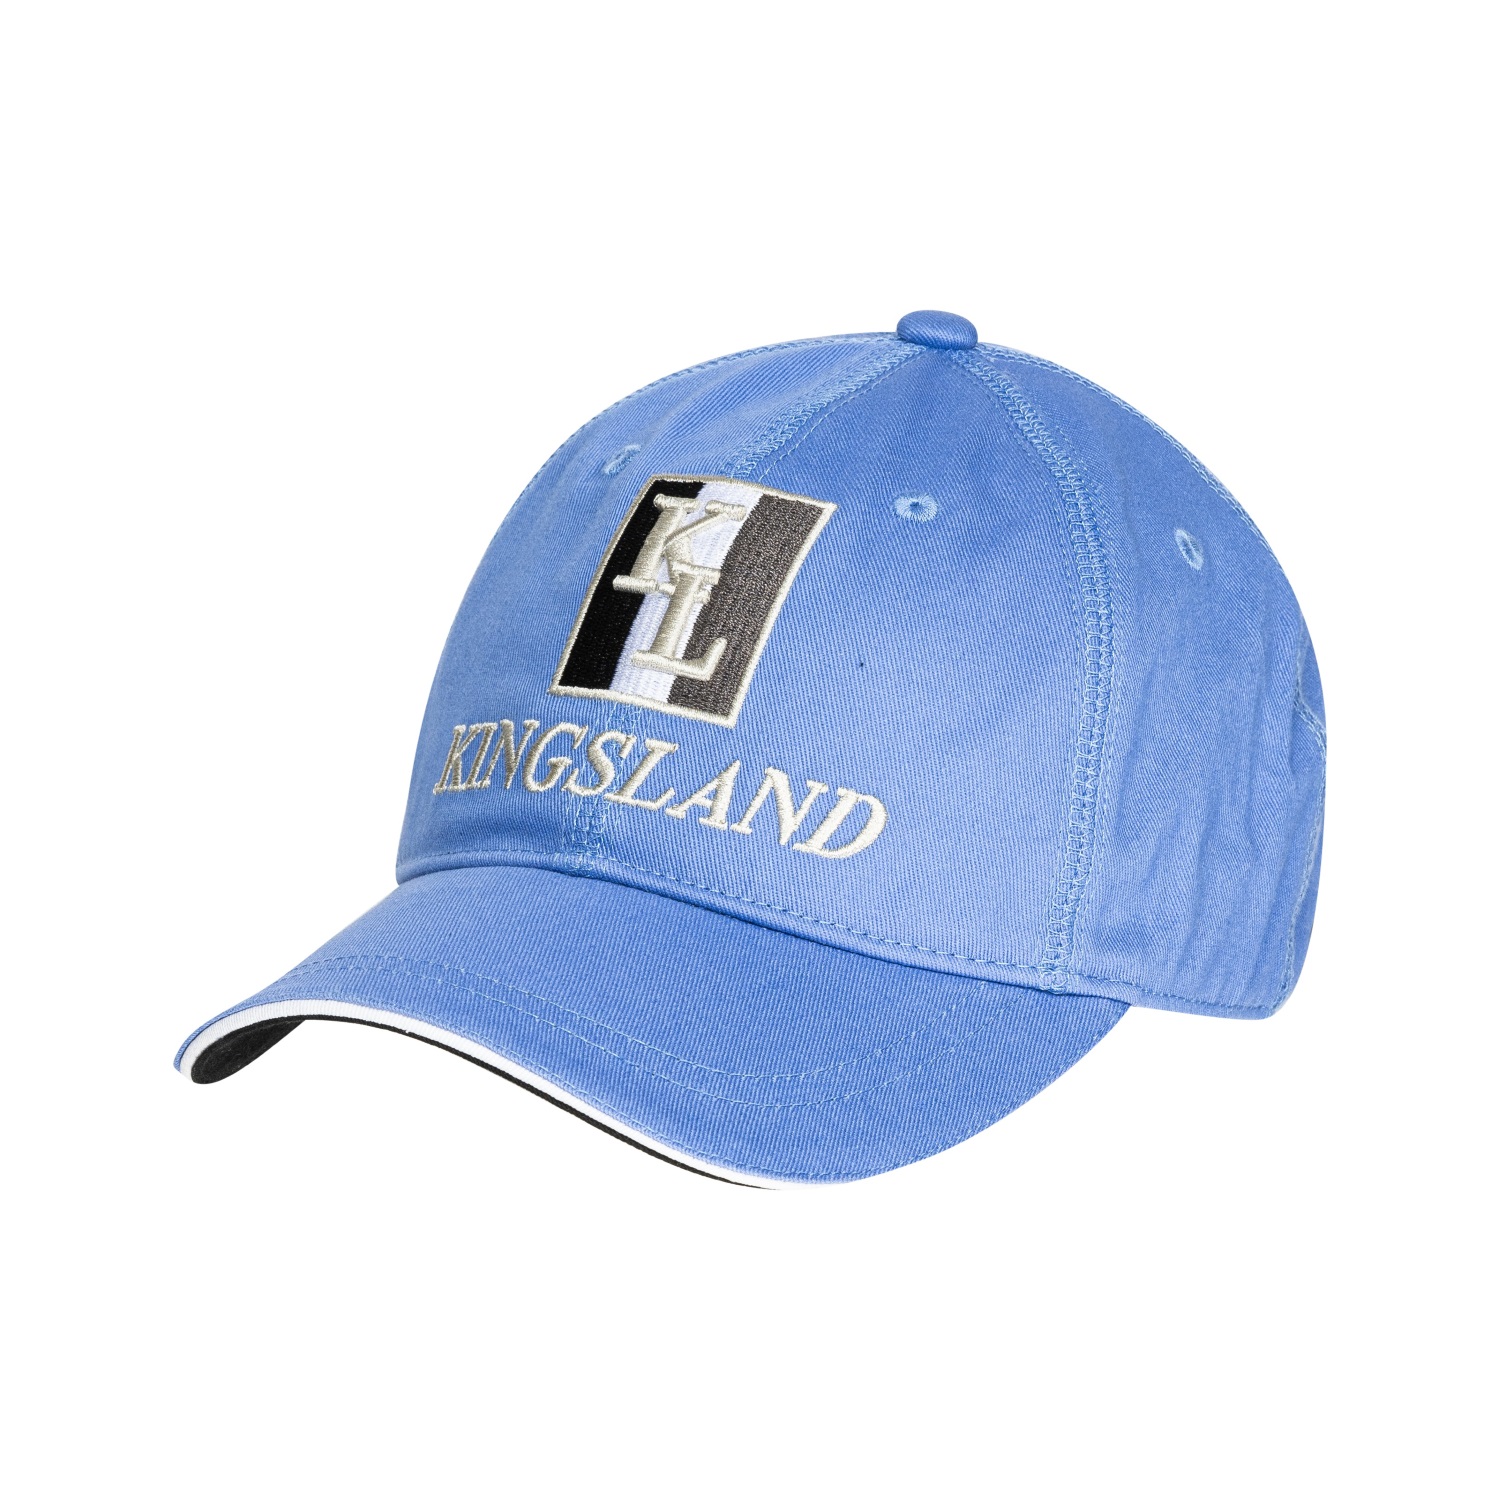 KINGSLAND Unisex Classic Limited Cap, Basecap - blue grap - onesize - 1